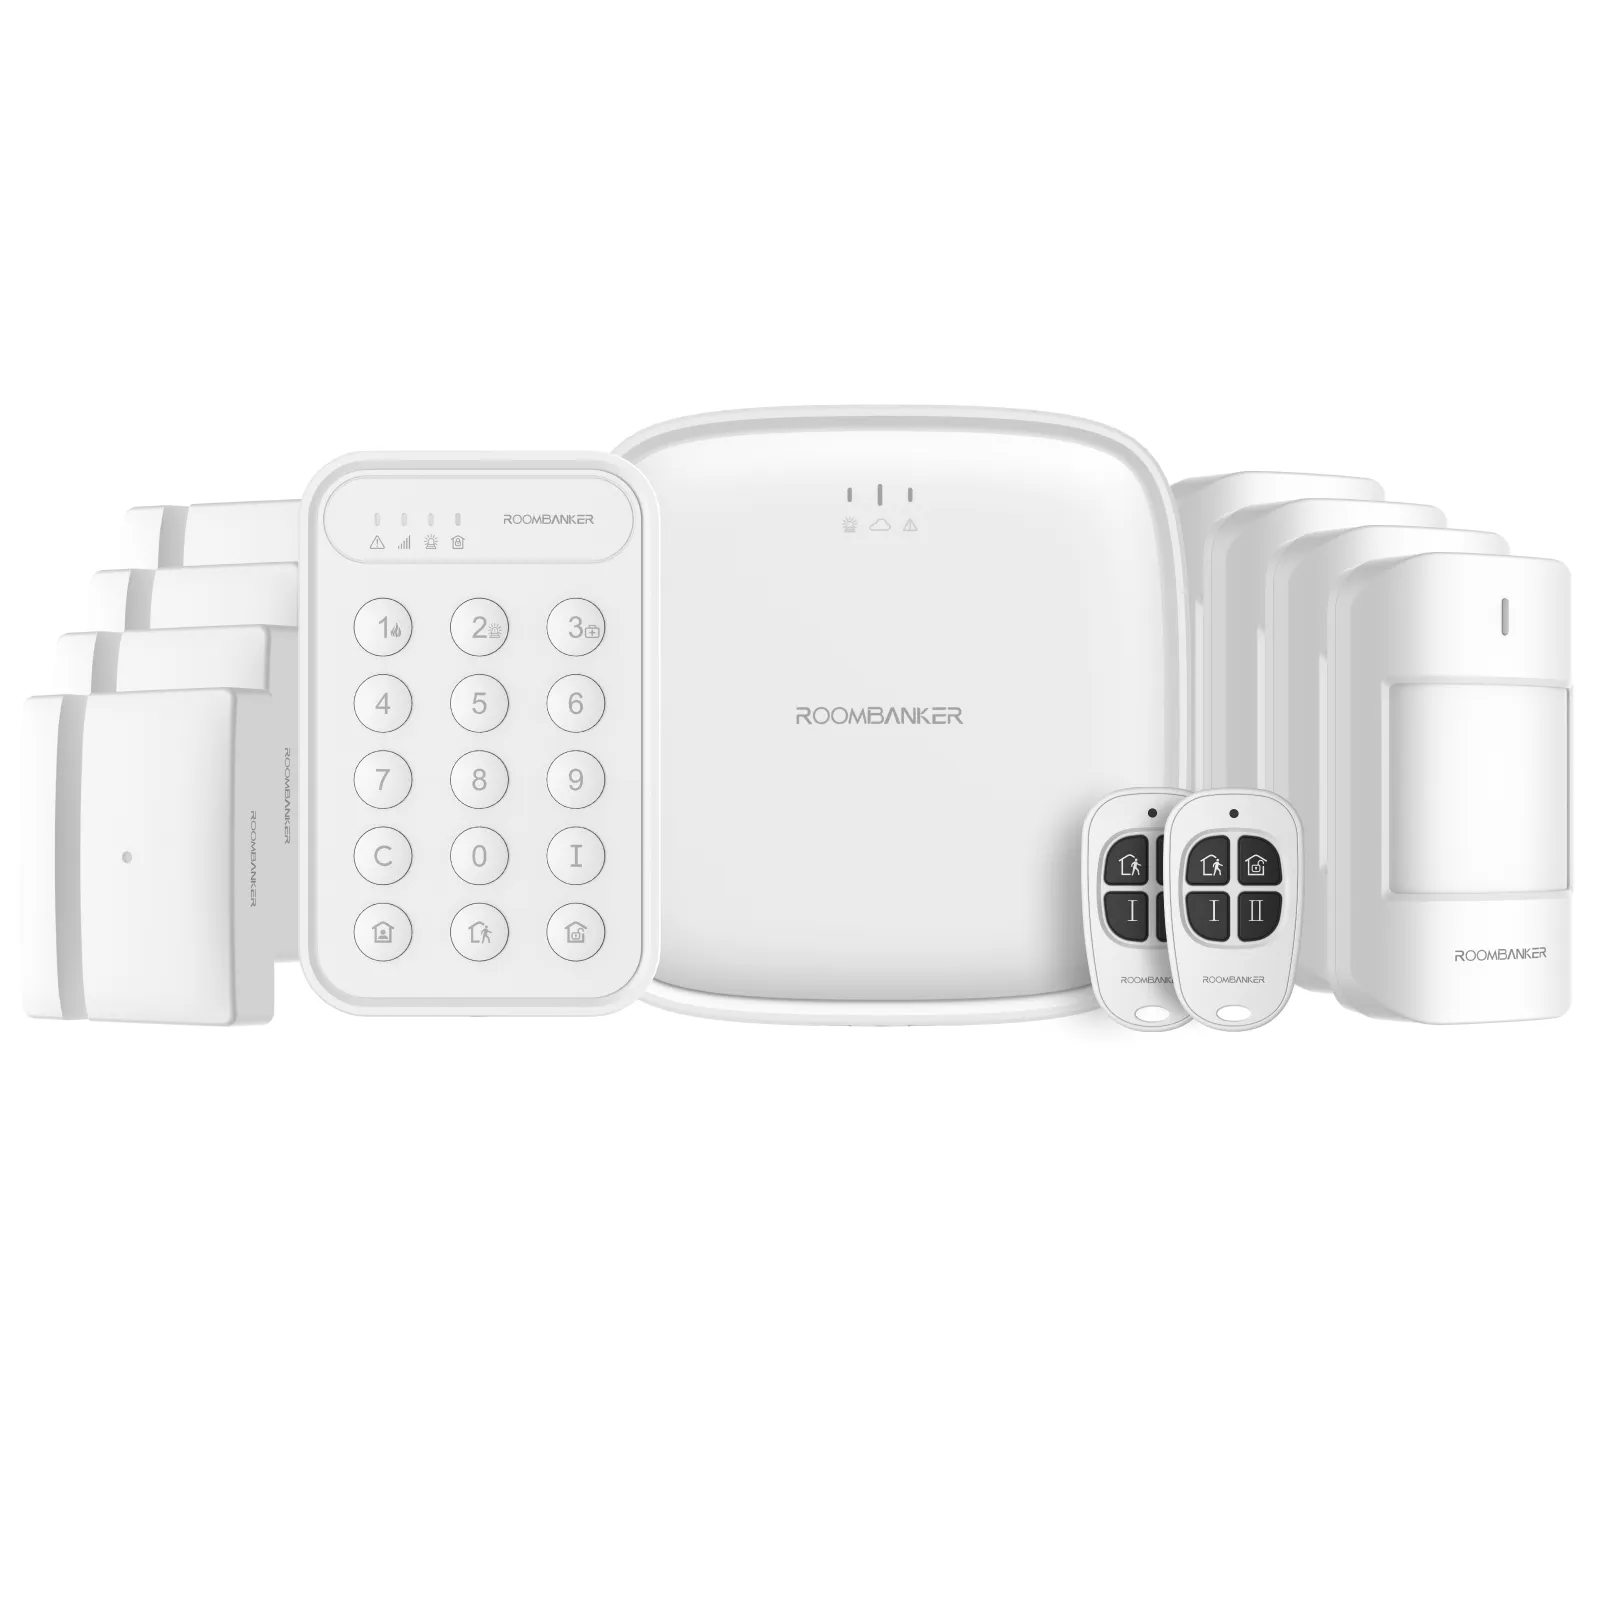 Roombanker sistem Alarm keamanan WiFi 4G, sistem Alarm rumah Sensor gerak pintu